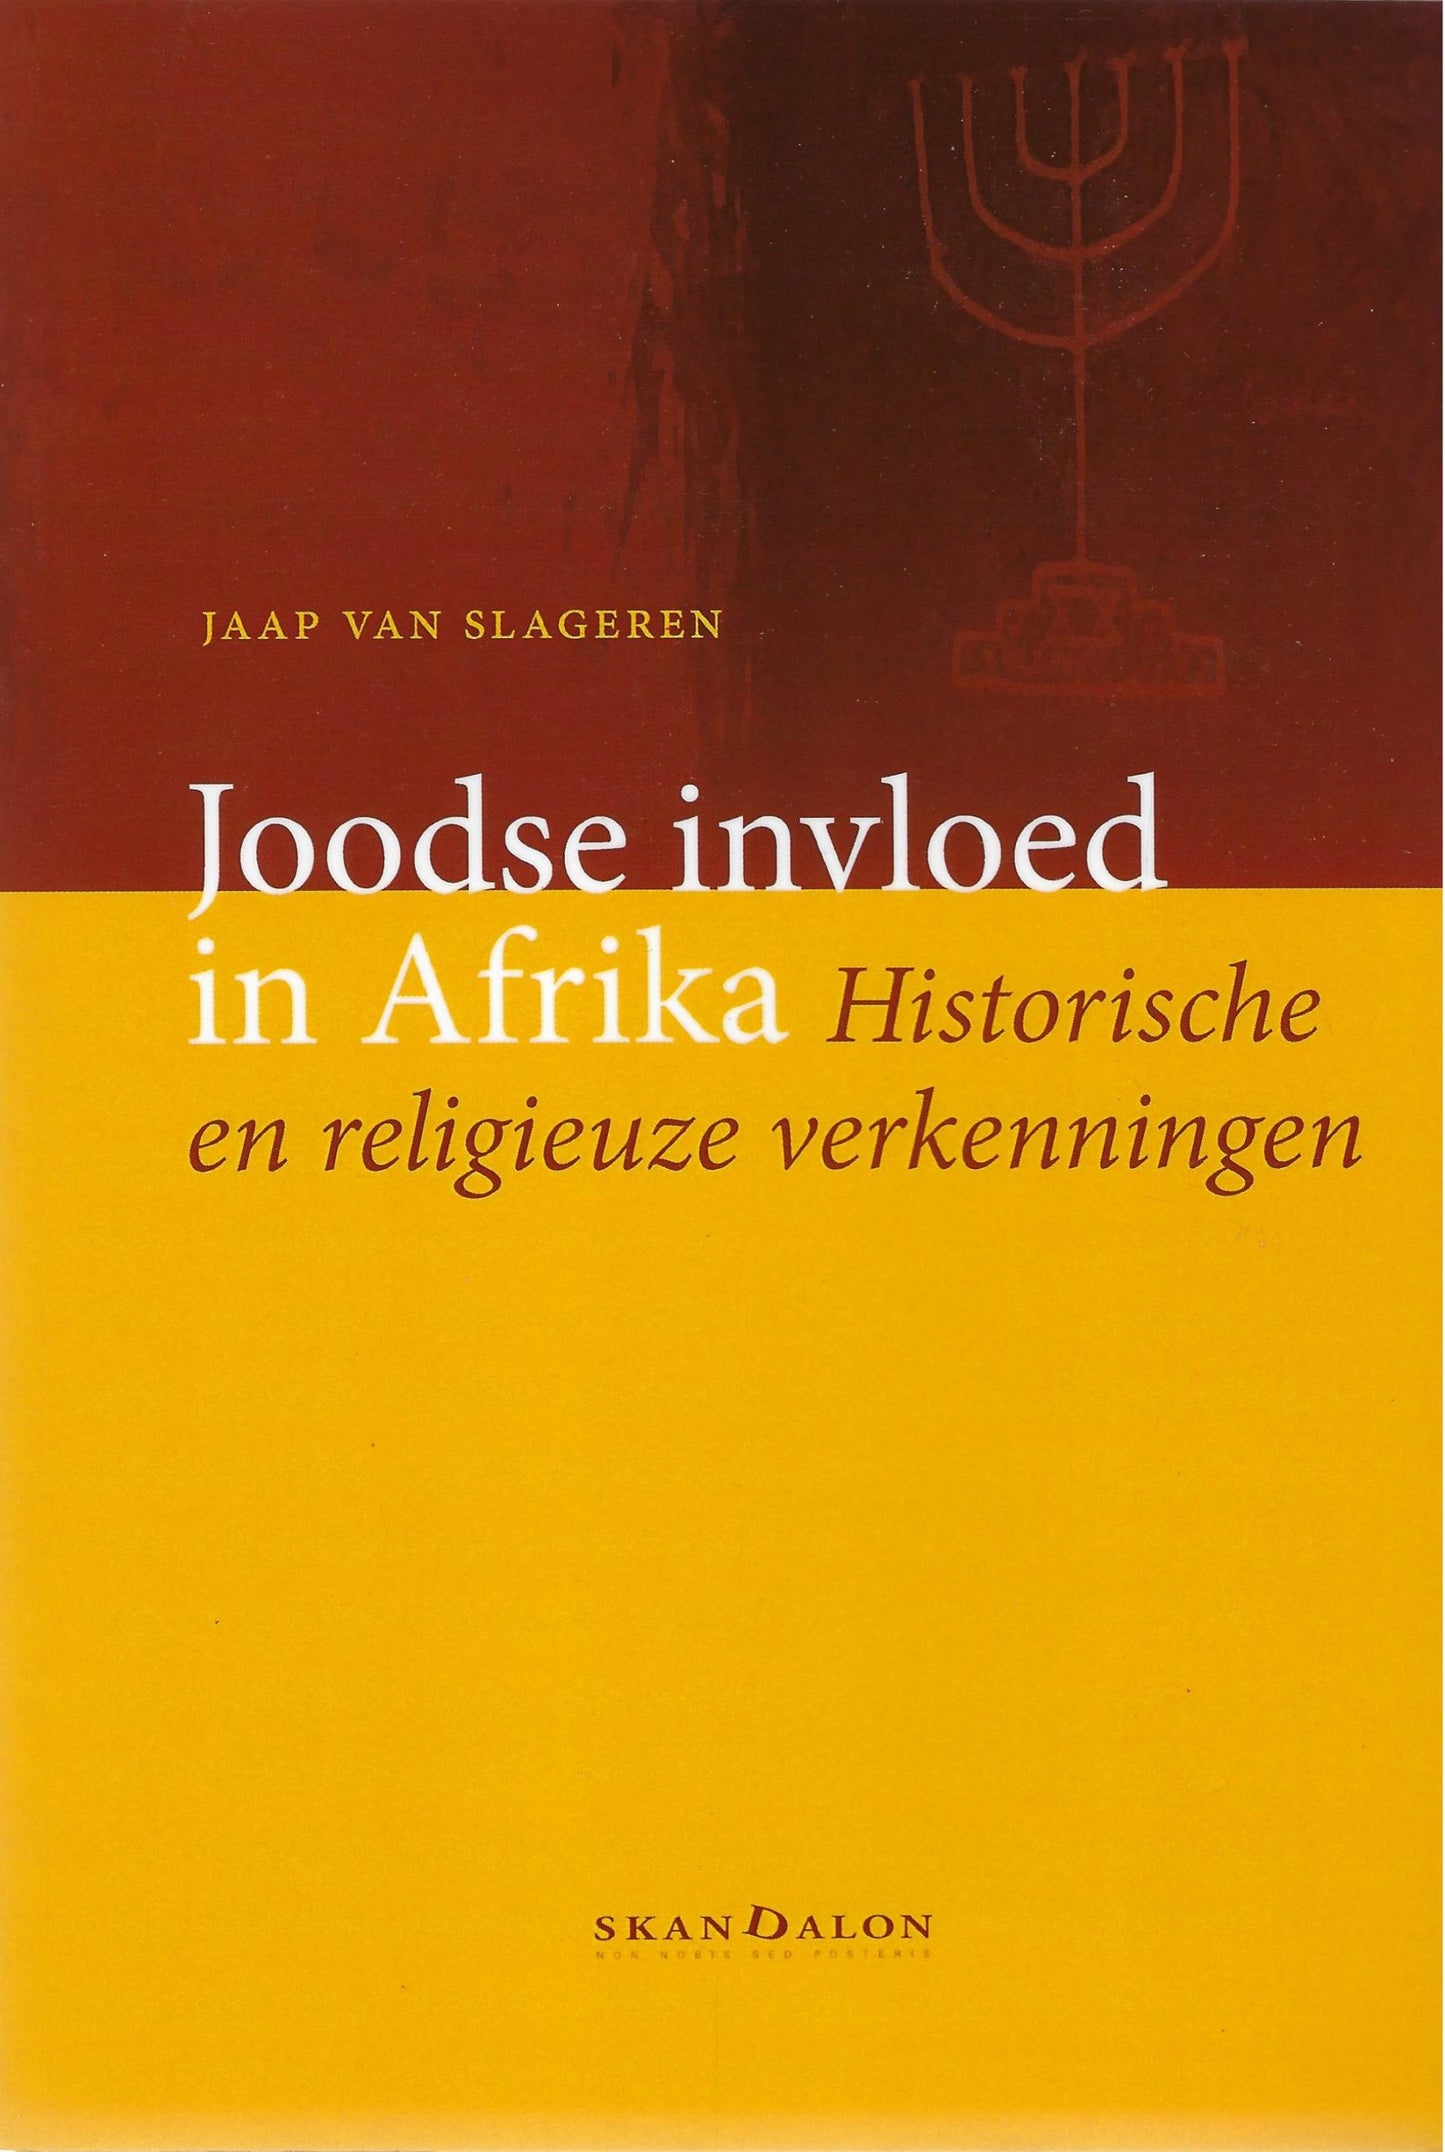 Joodse invloed in Afrika / historische en religieuze verkenningen